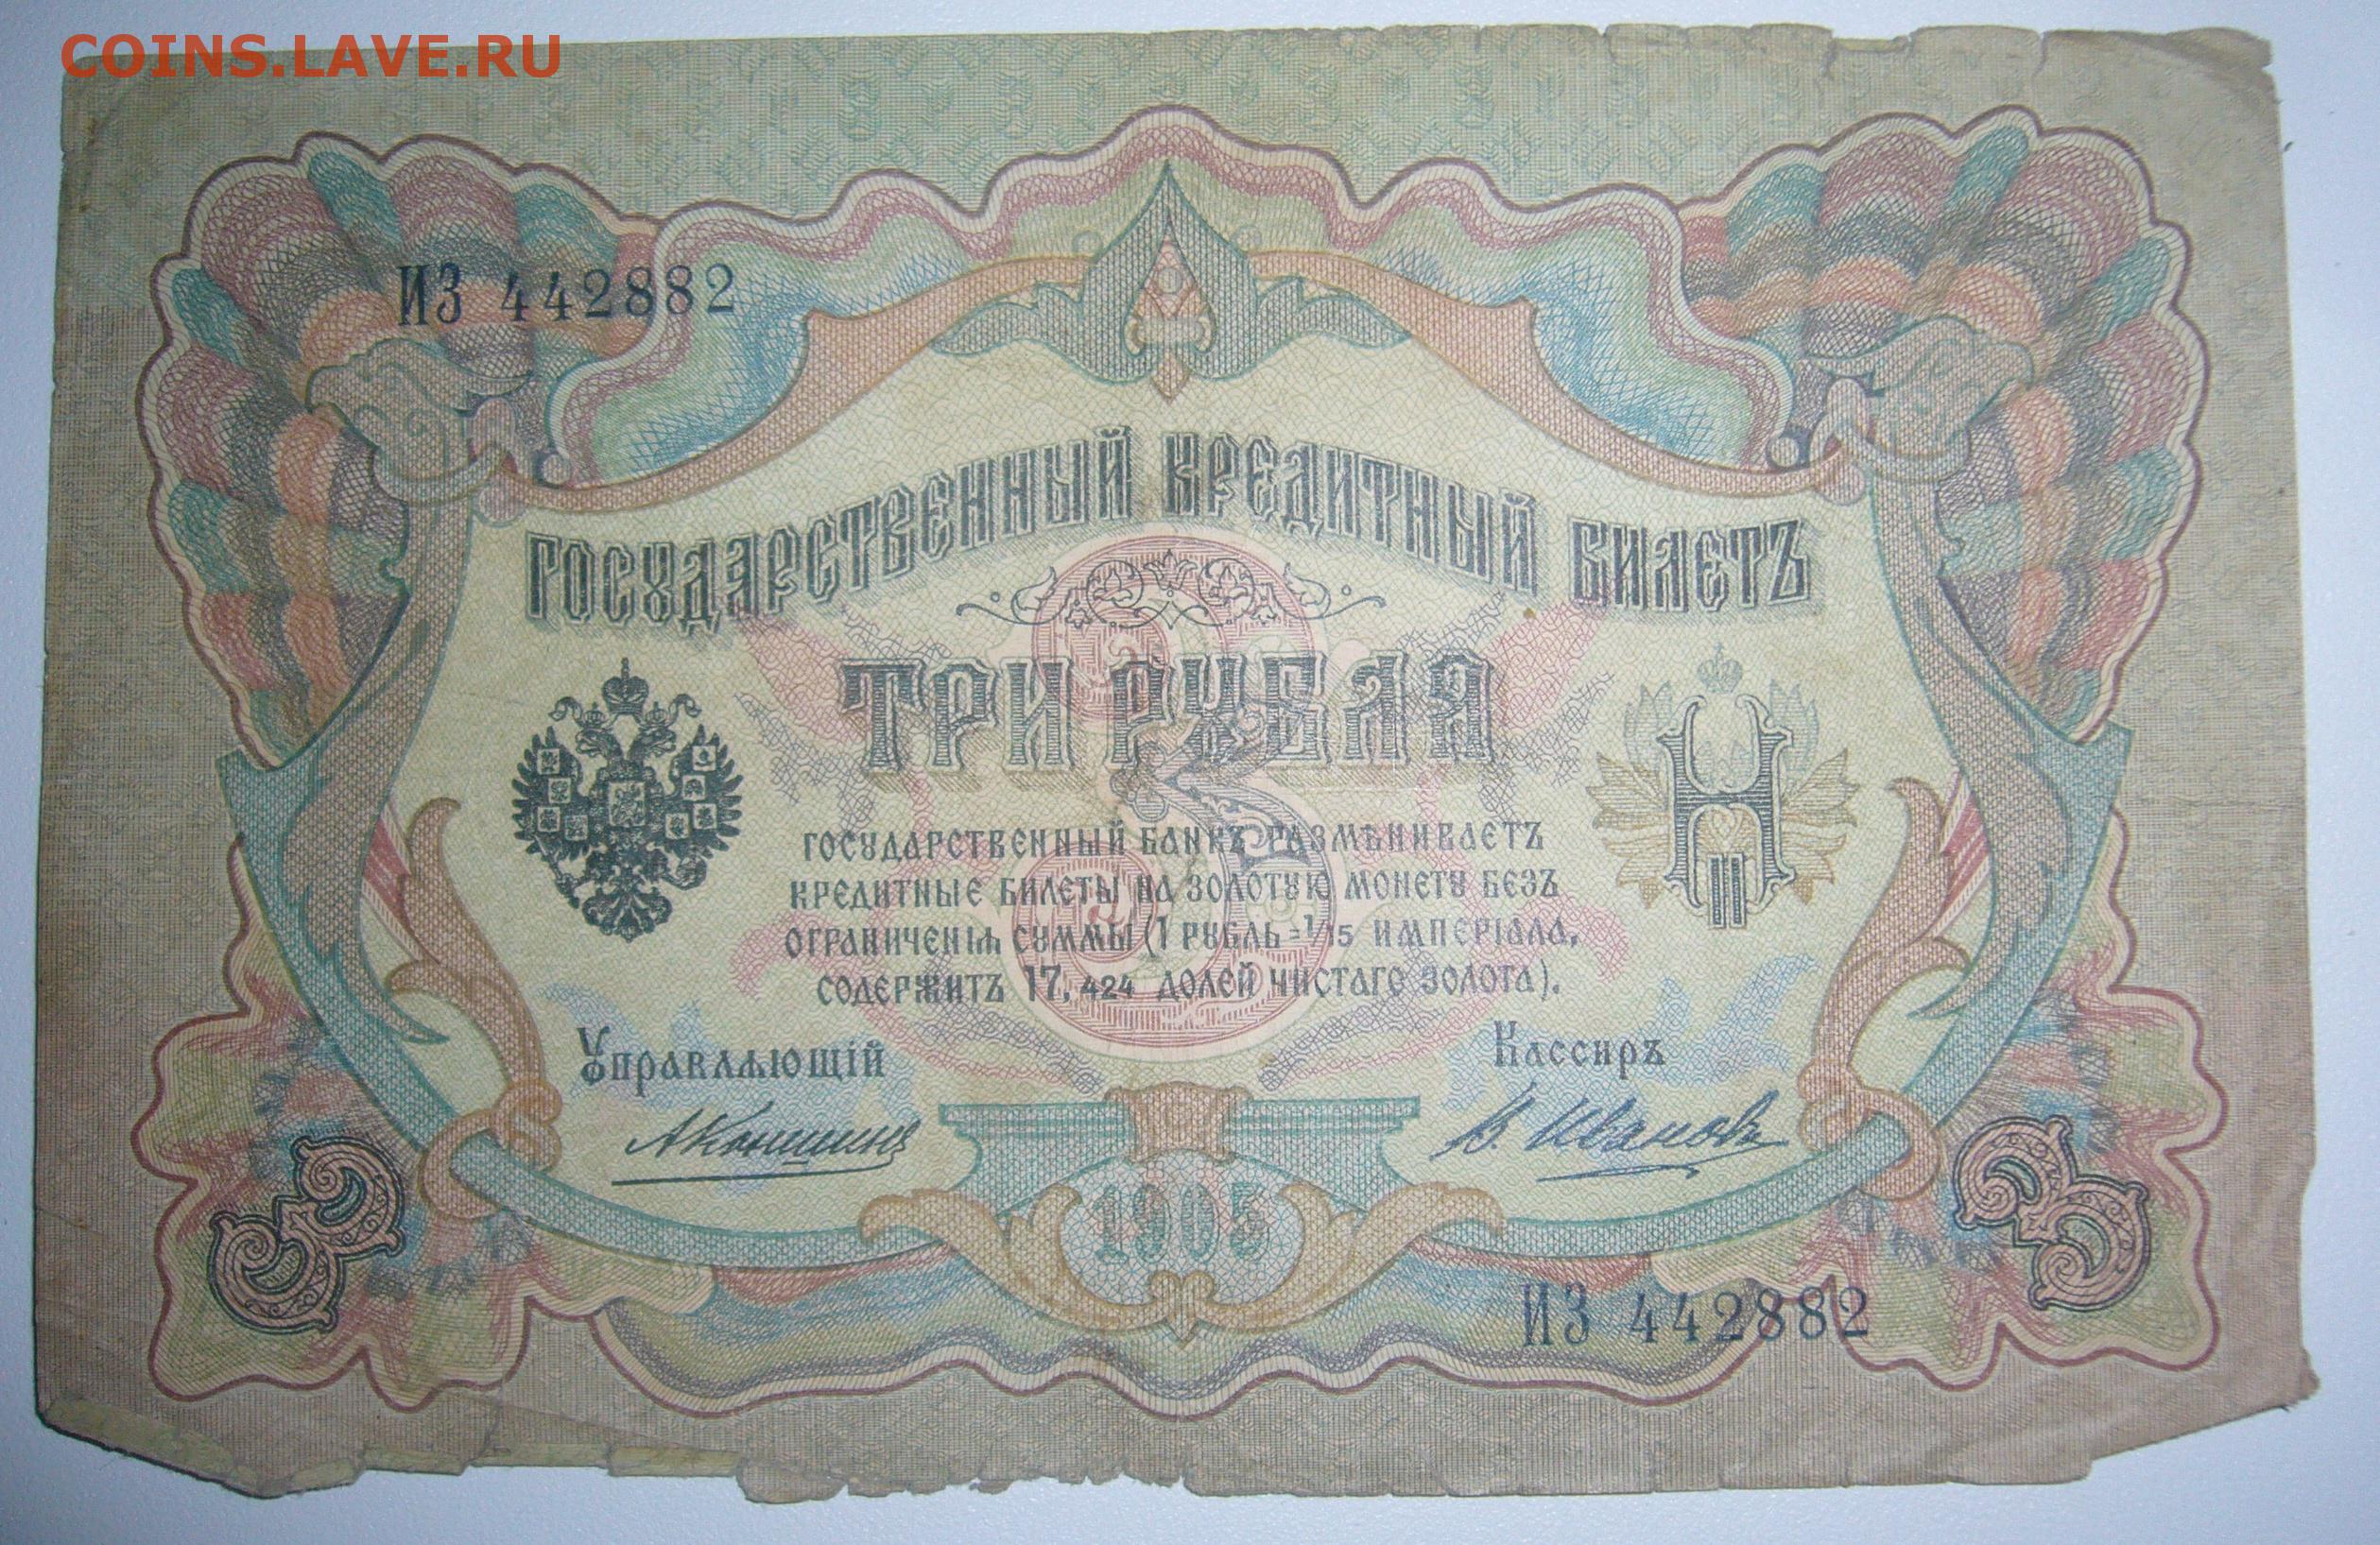 Шестьдесят три рубля. 1 Рубль 1905. Боны Европы выпущенные в 1960 году. 3 Рубля 1905 года цена год выпуска модификация.